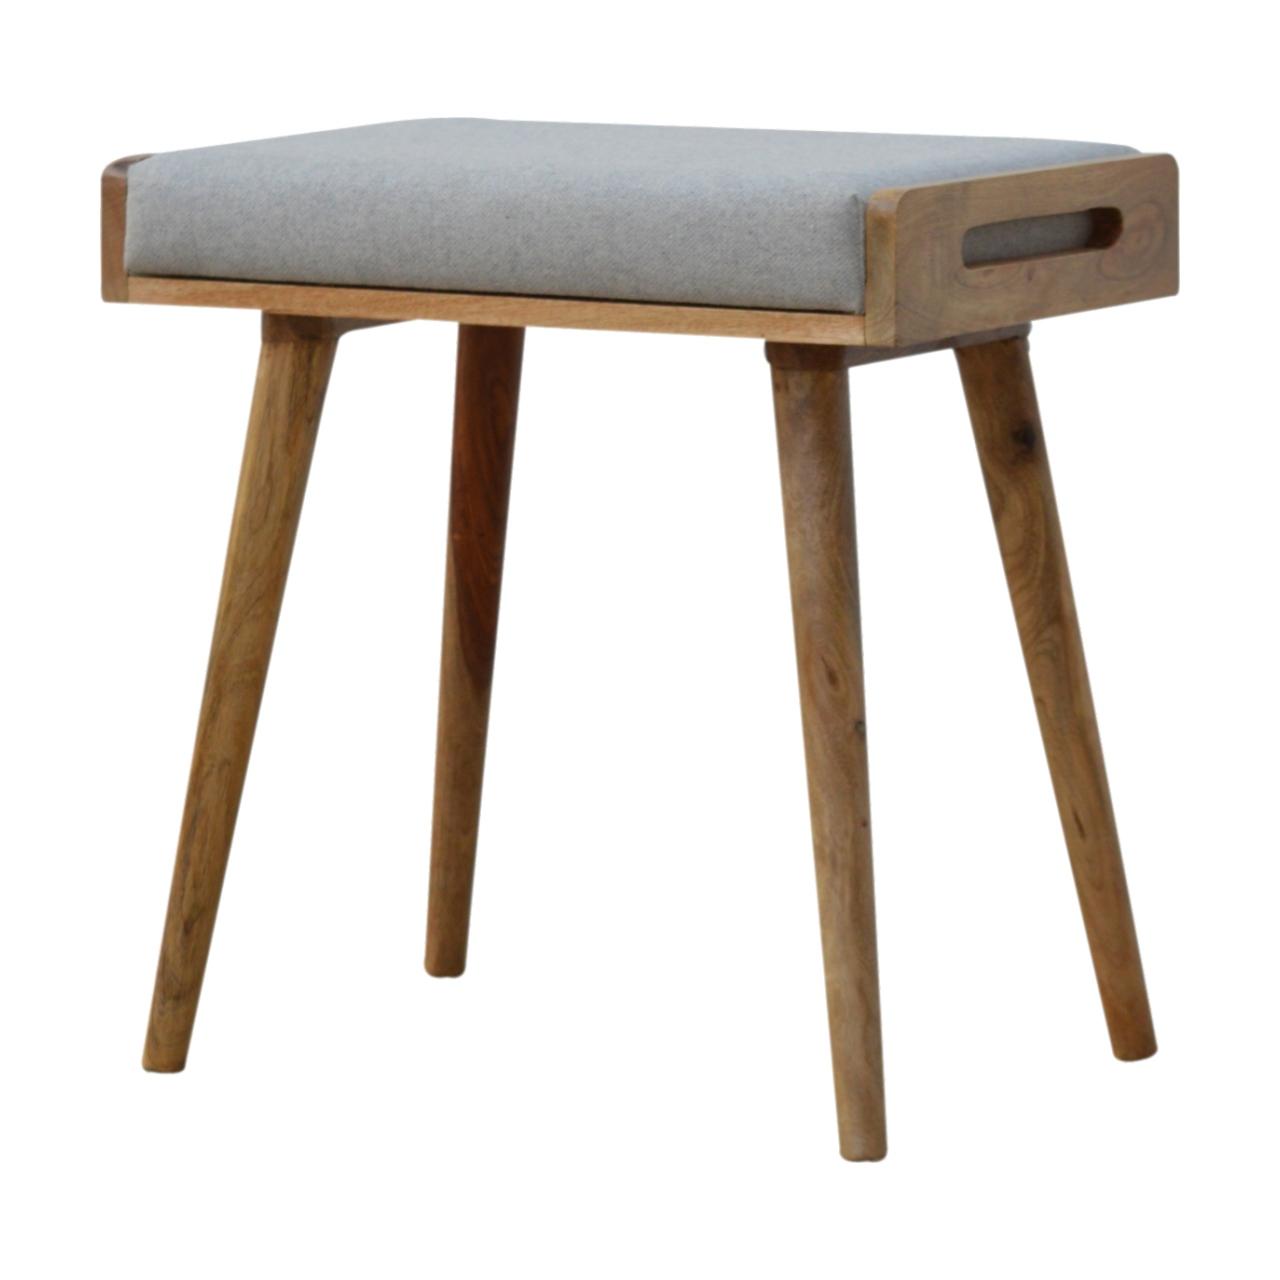 Grey Tweed Solid Wood Footstool